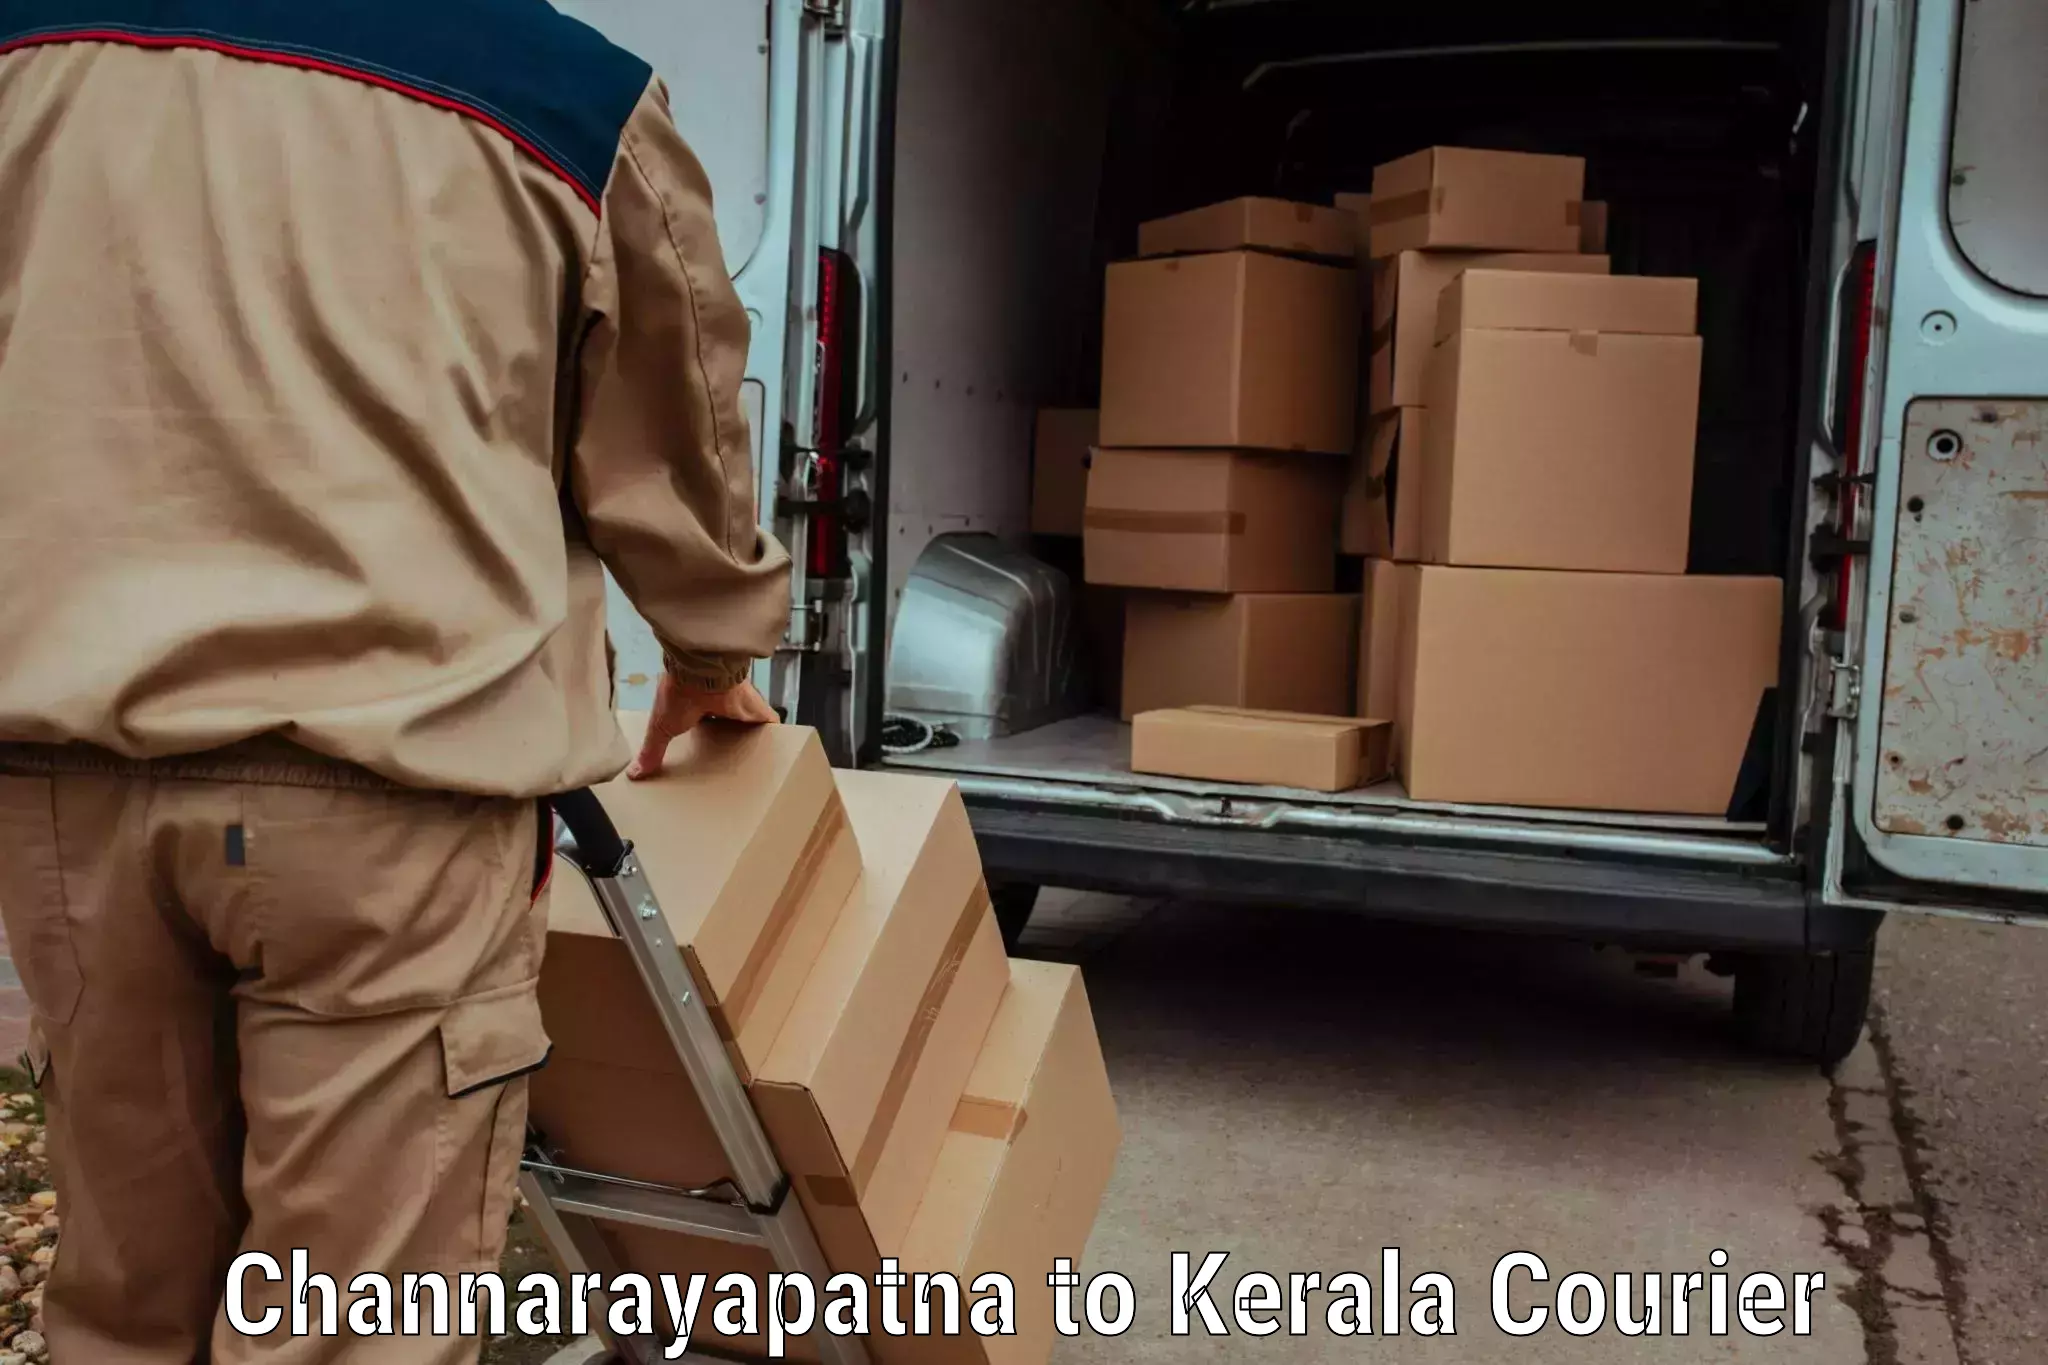 Global shipping solutions Channarayapatna to Ottapalam